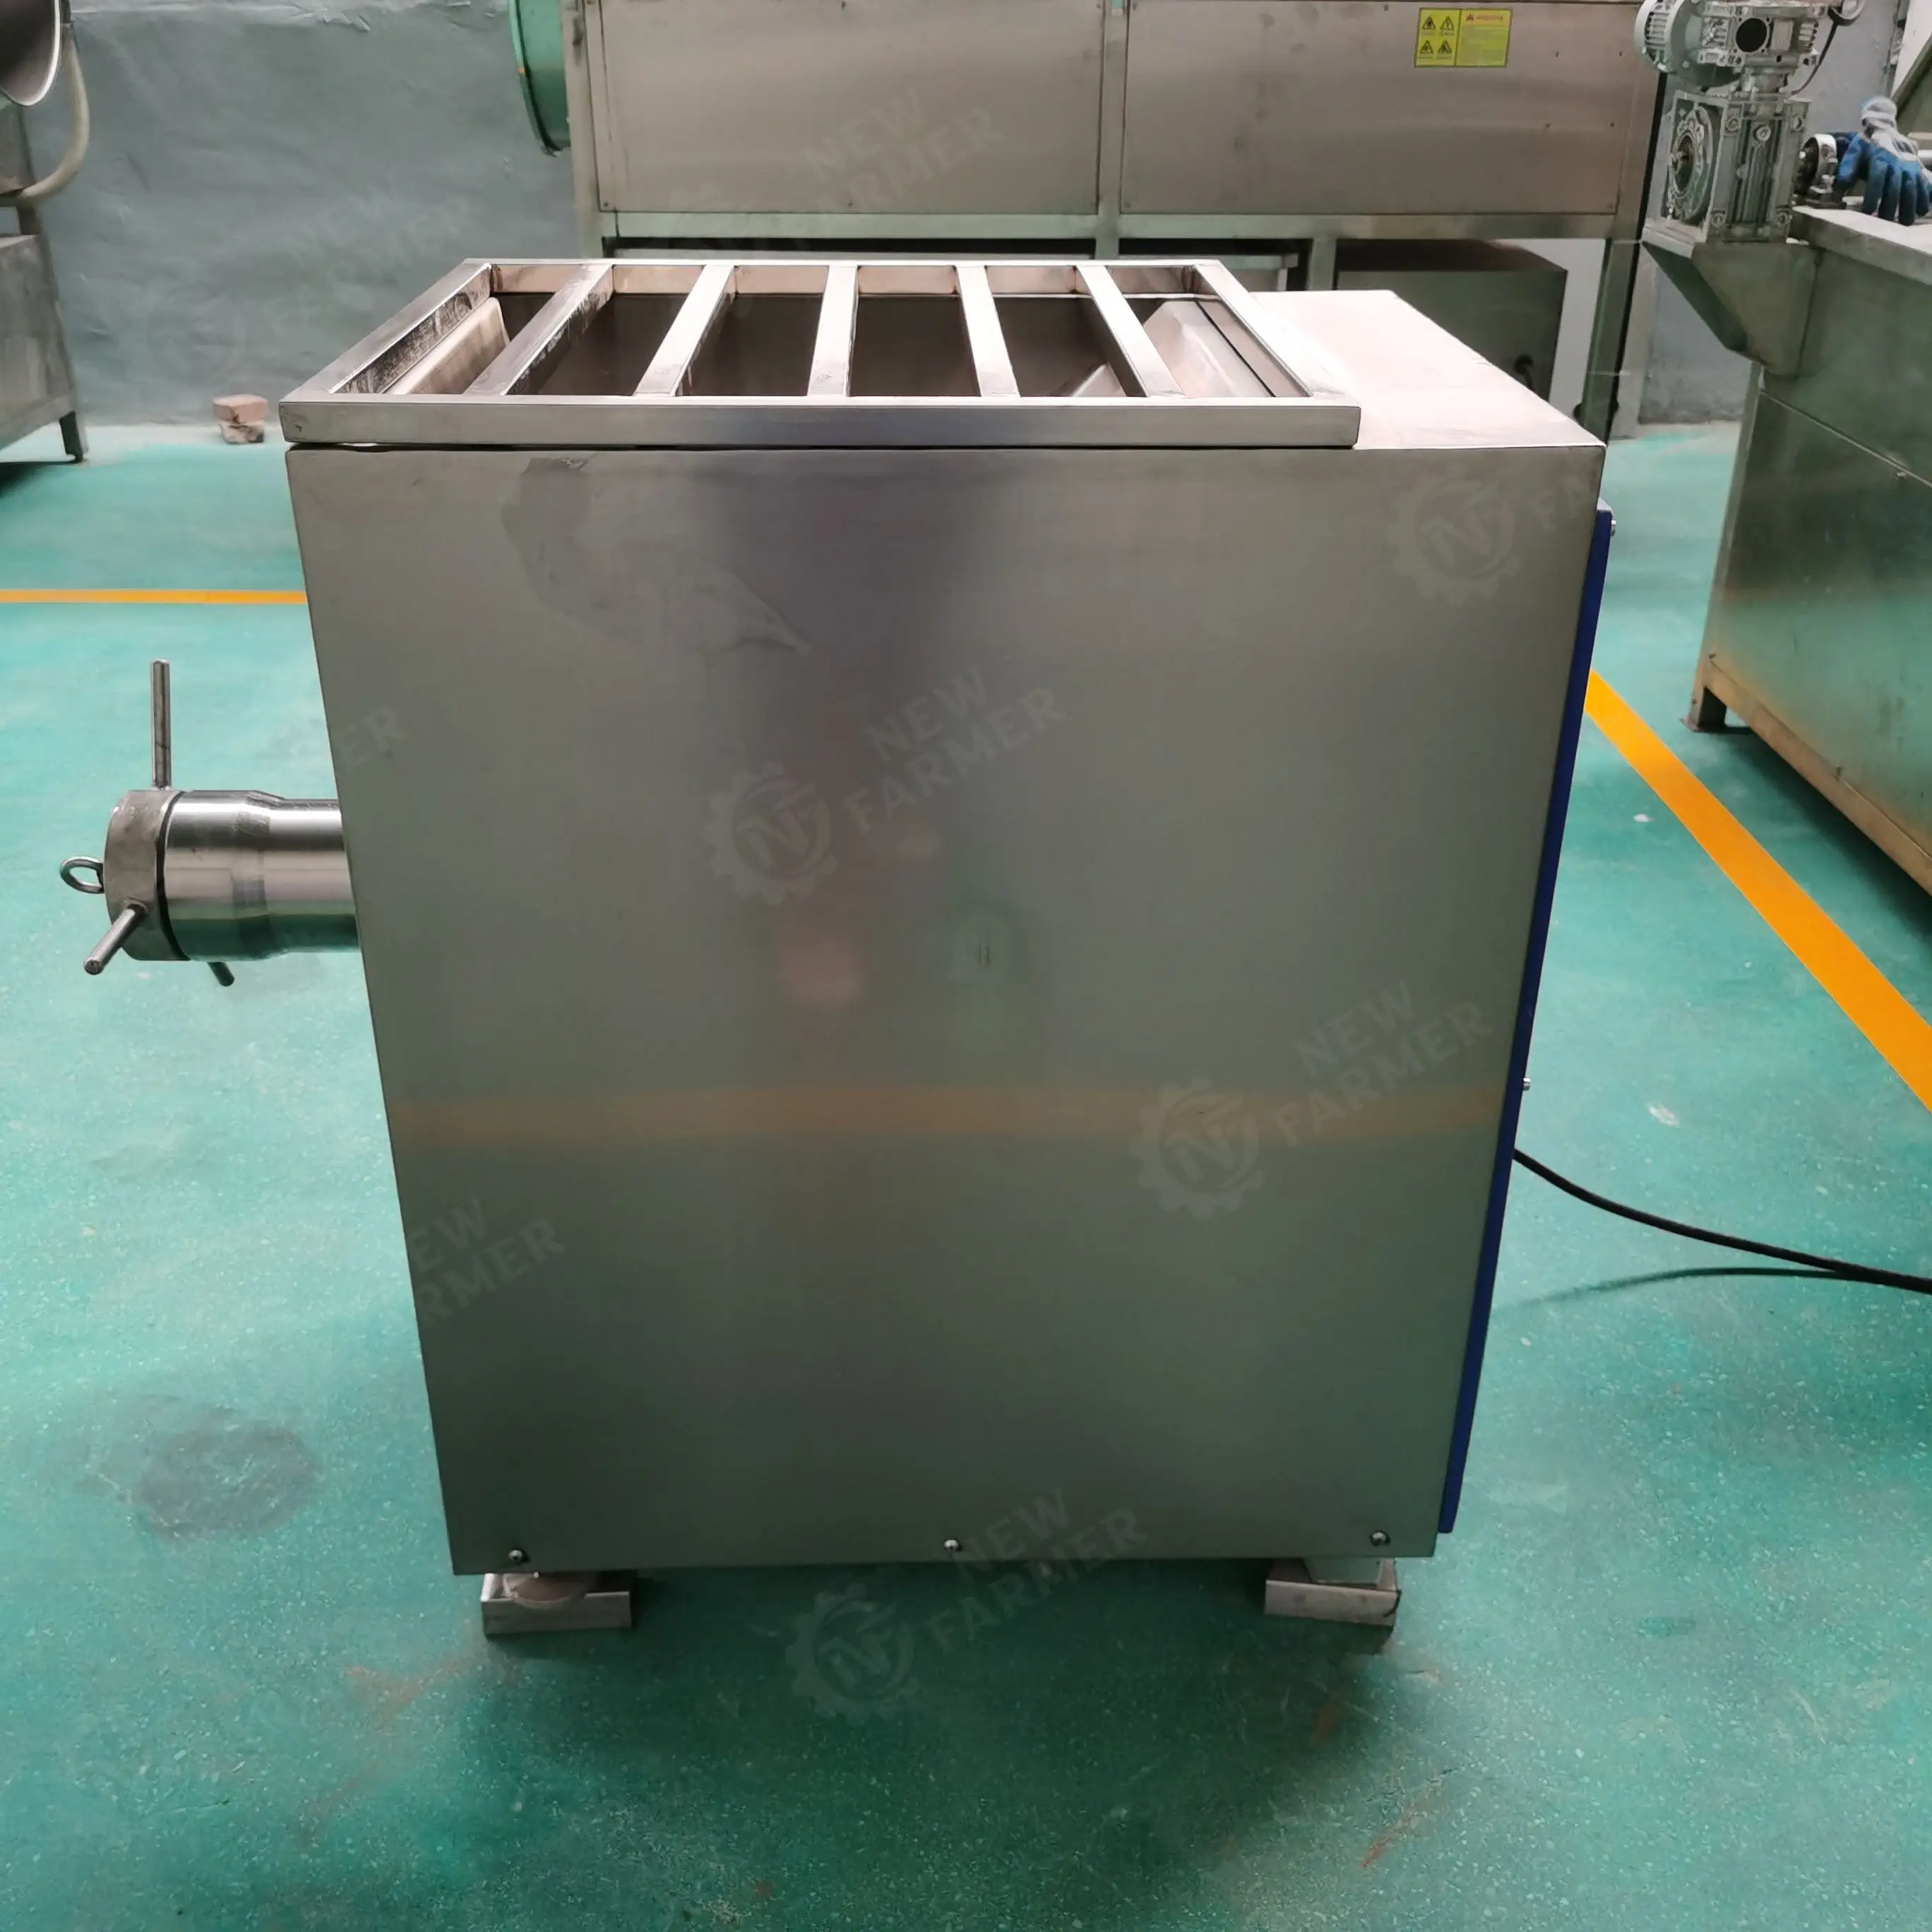 Novo moedor de carne elétrico de aço inoxidável industrial e comercial com engrenagem misturador para triturador de carne congelada em grande escala